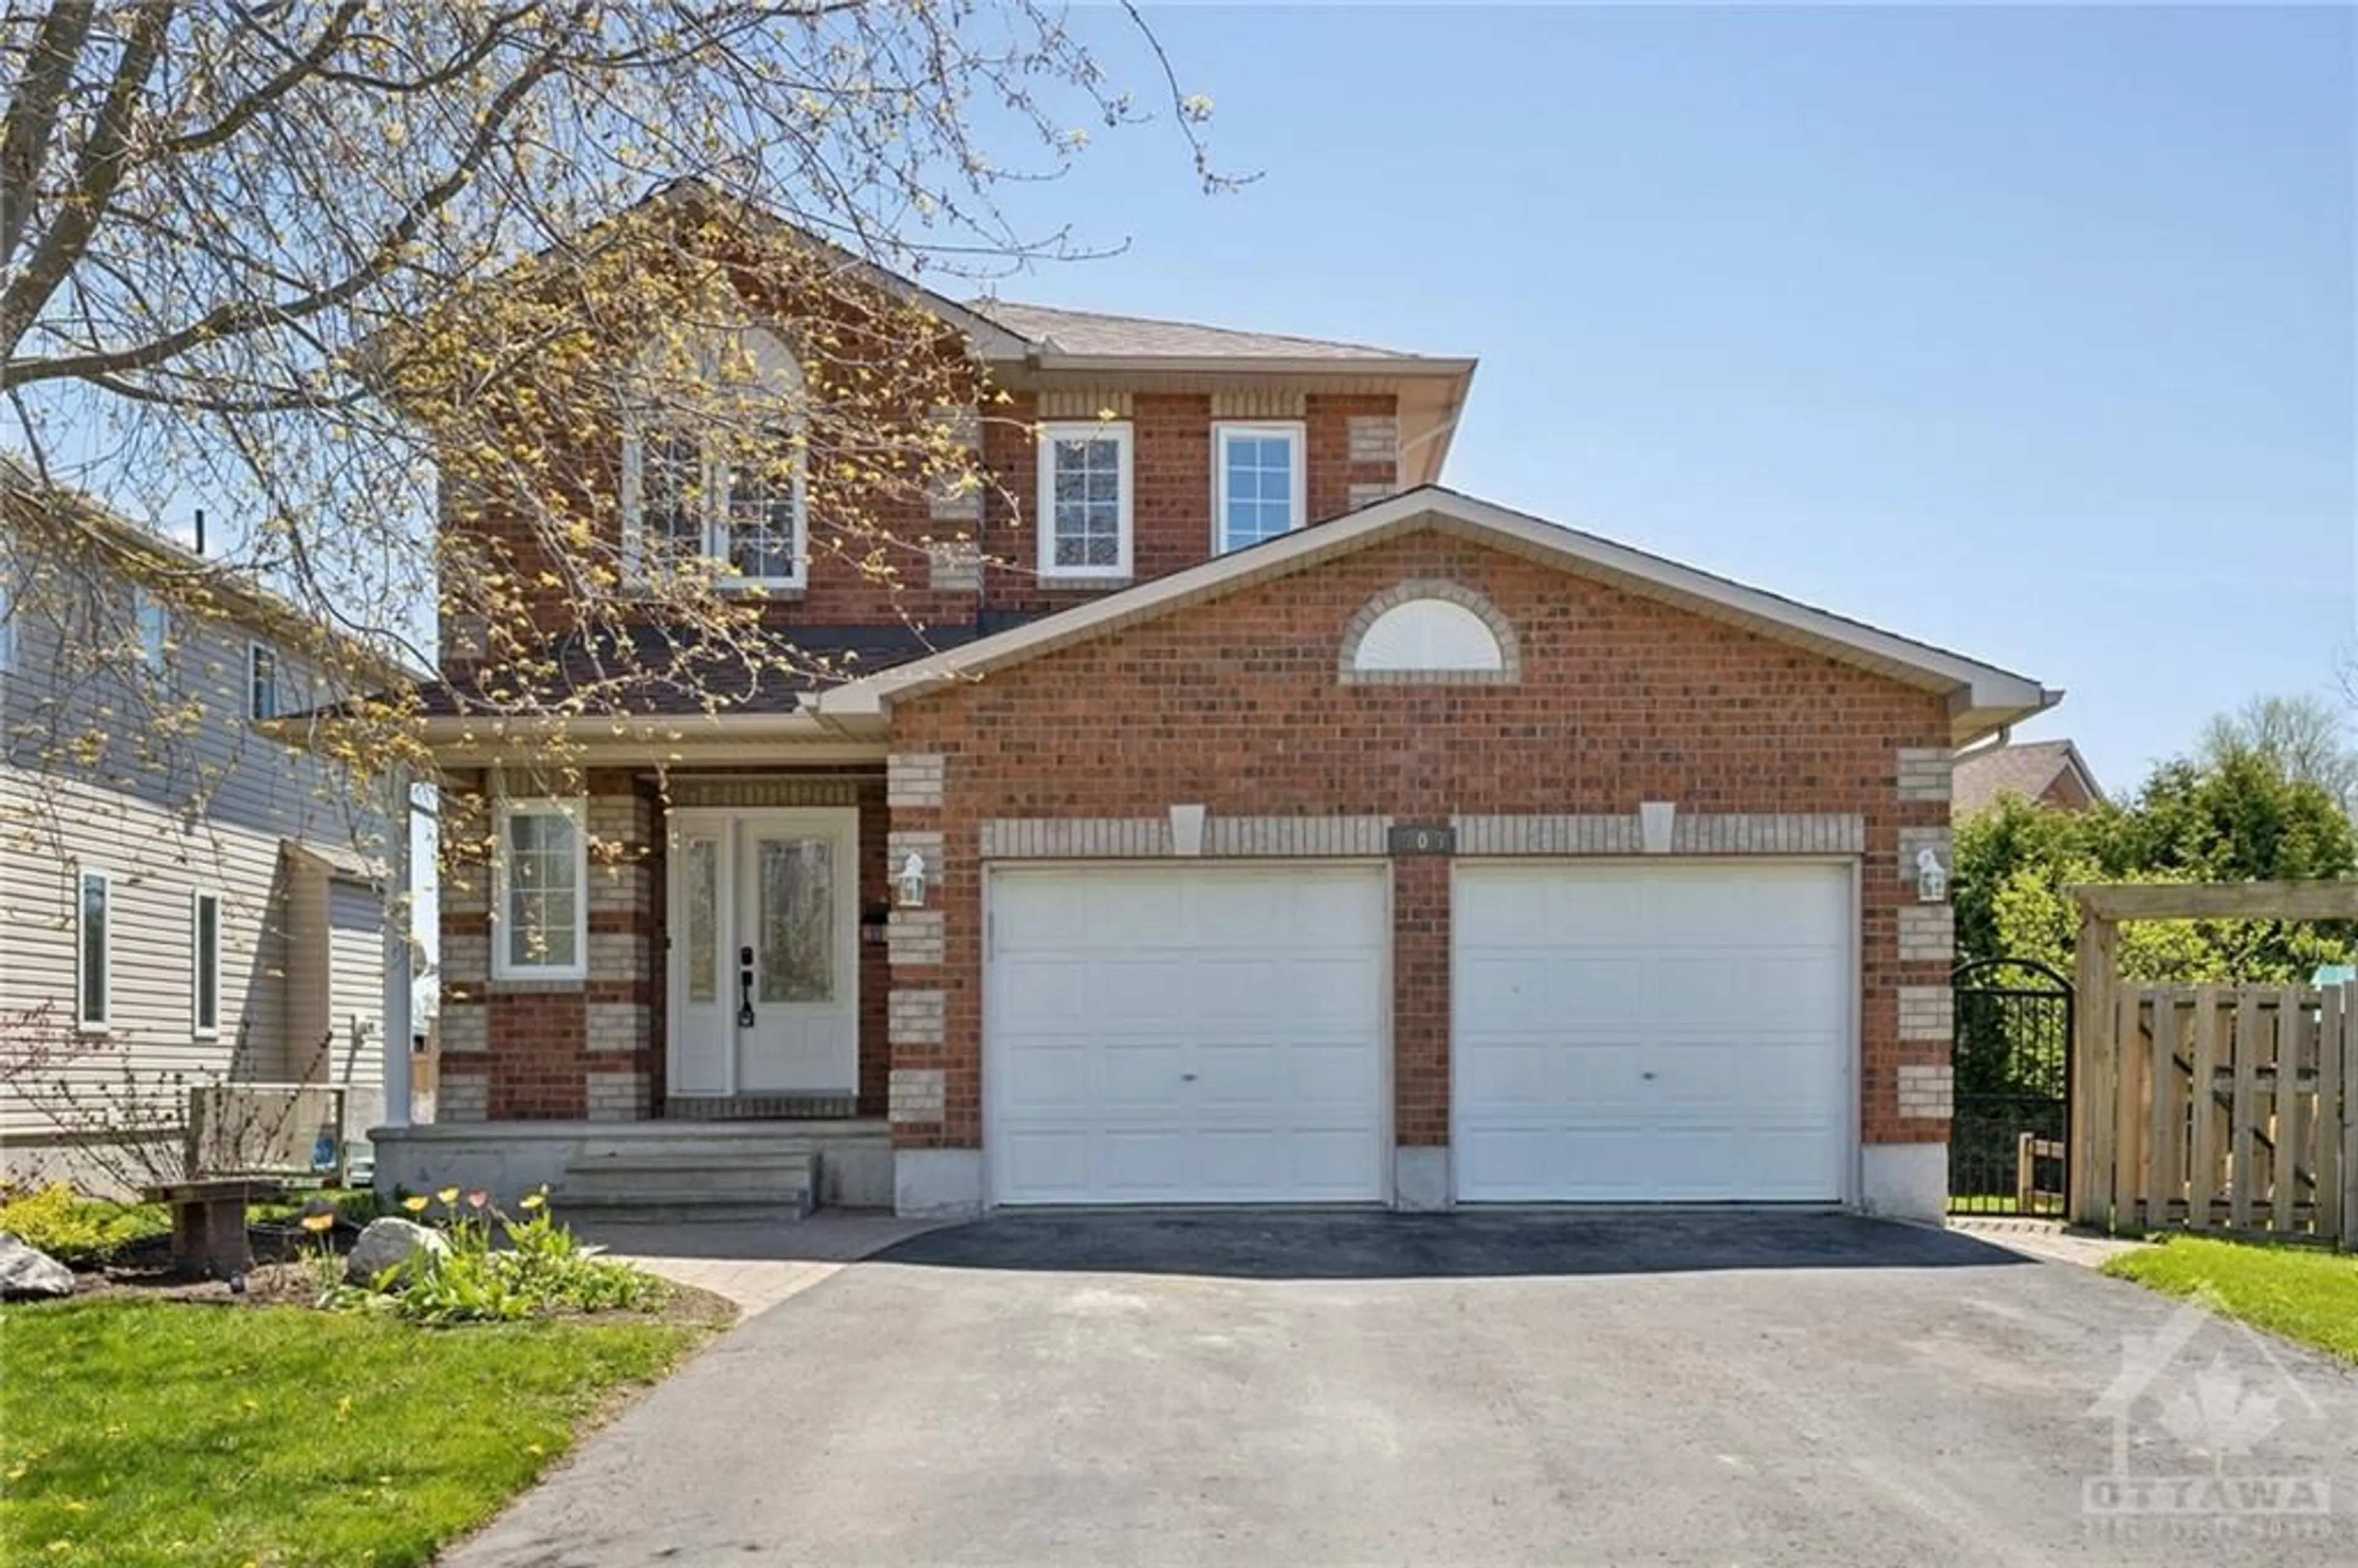 Home with brick exterior material for 609 QUARRY Rd, Carleton Place Ontario K7C 4V4